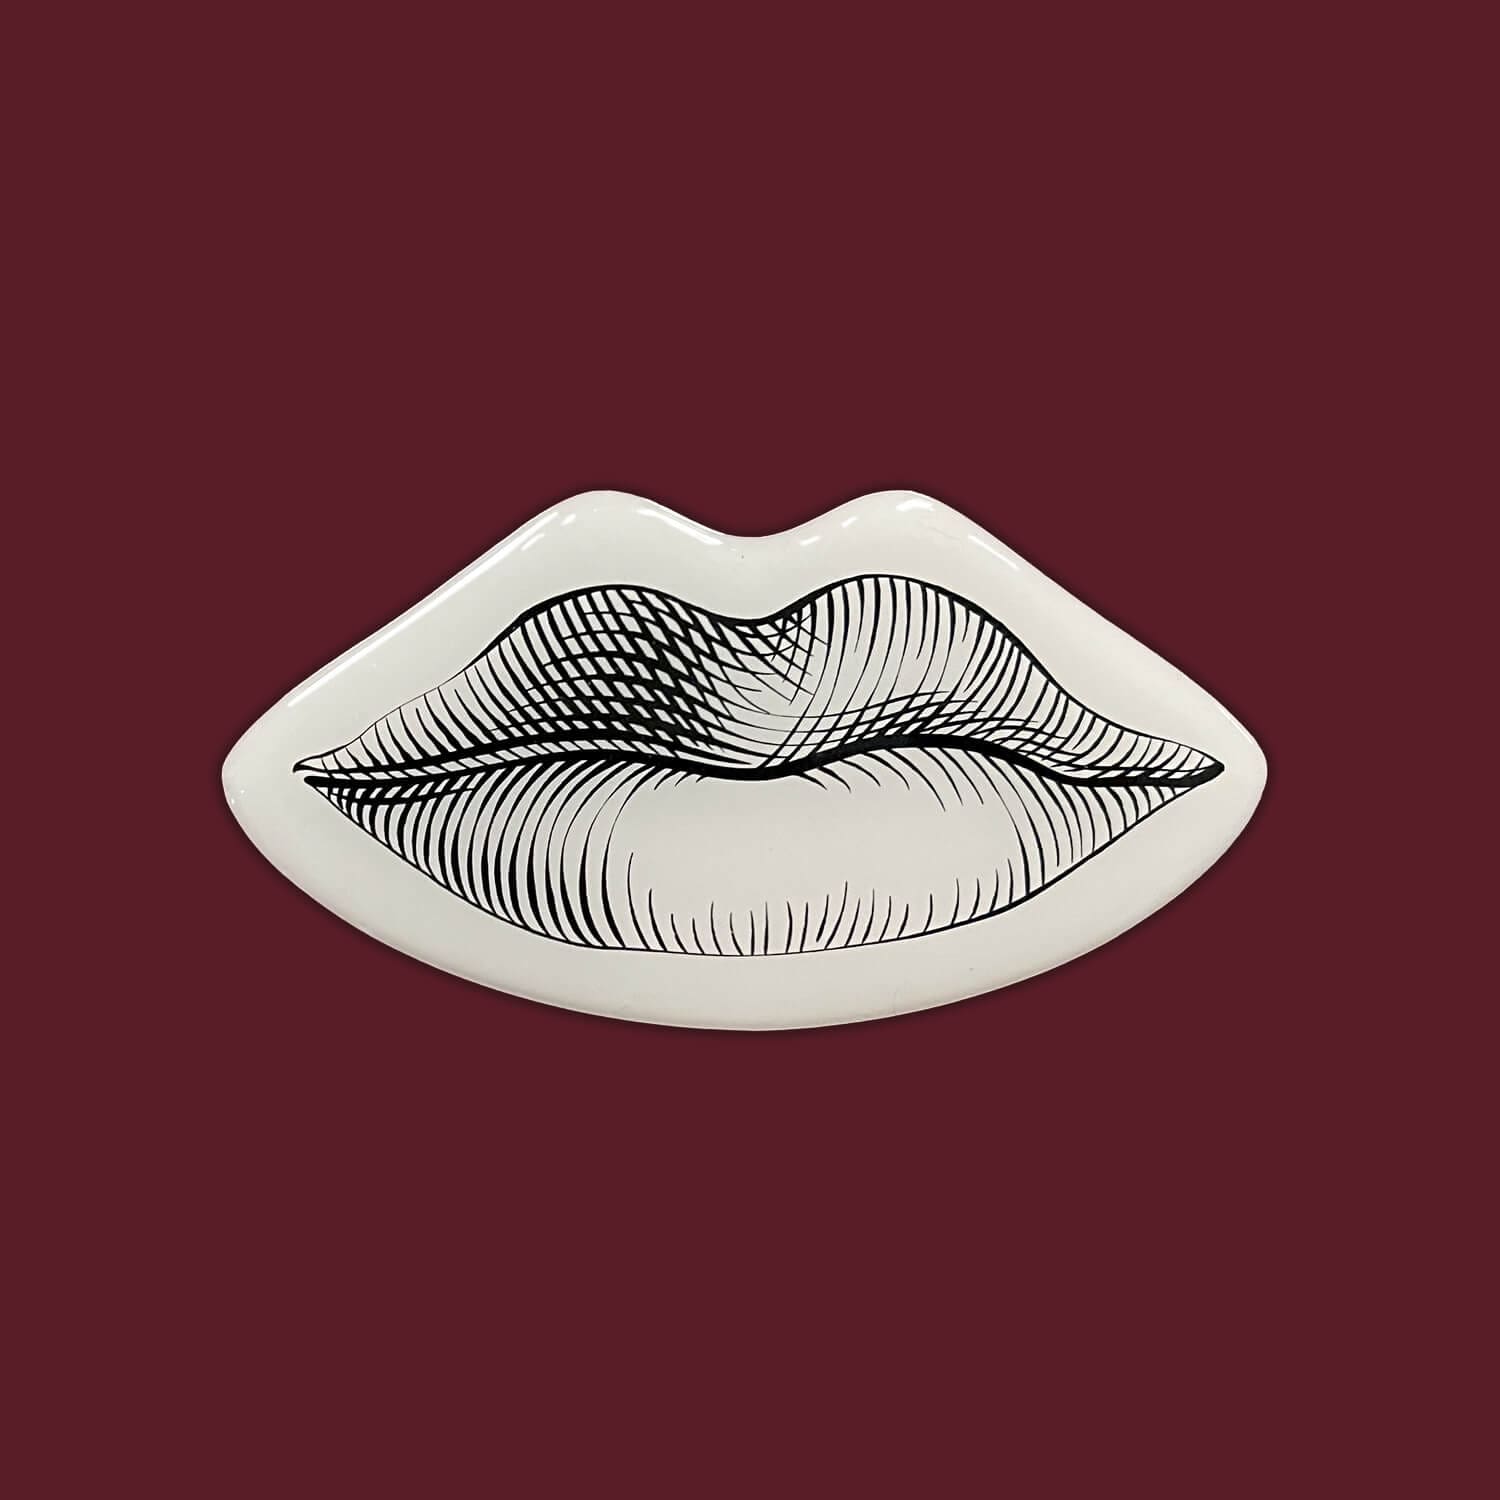 la bouche illustrée façon gravure pour la cite du vin de bordeaux, design ichetkar